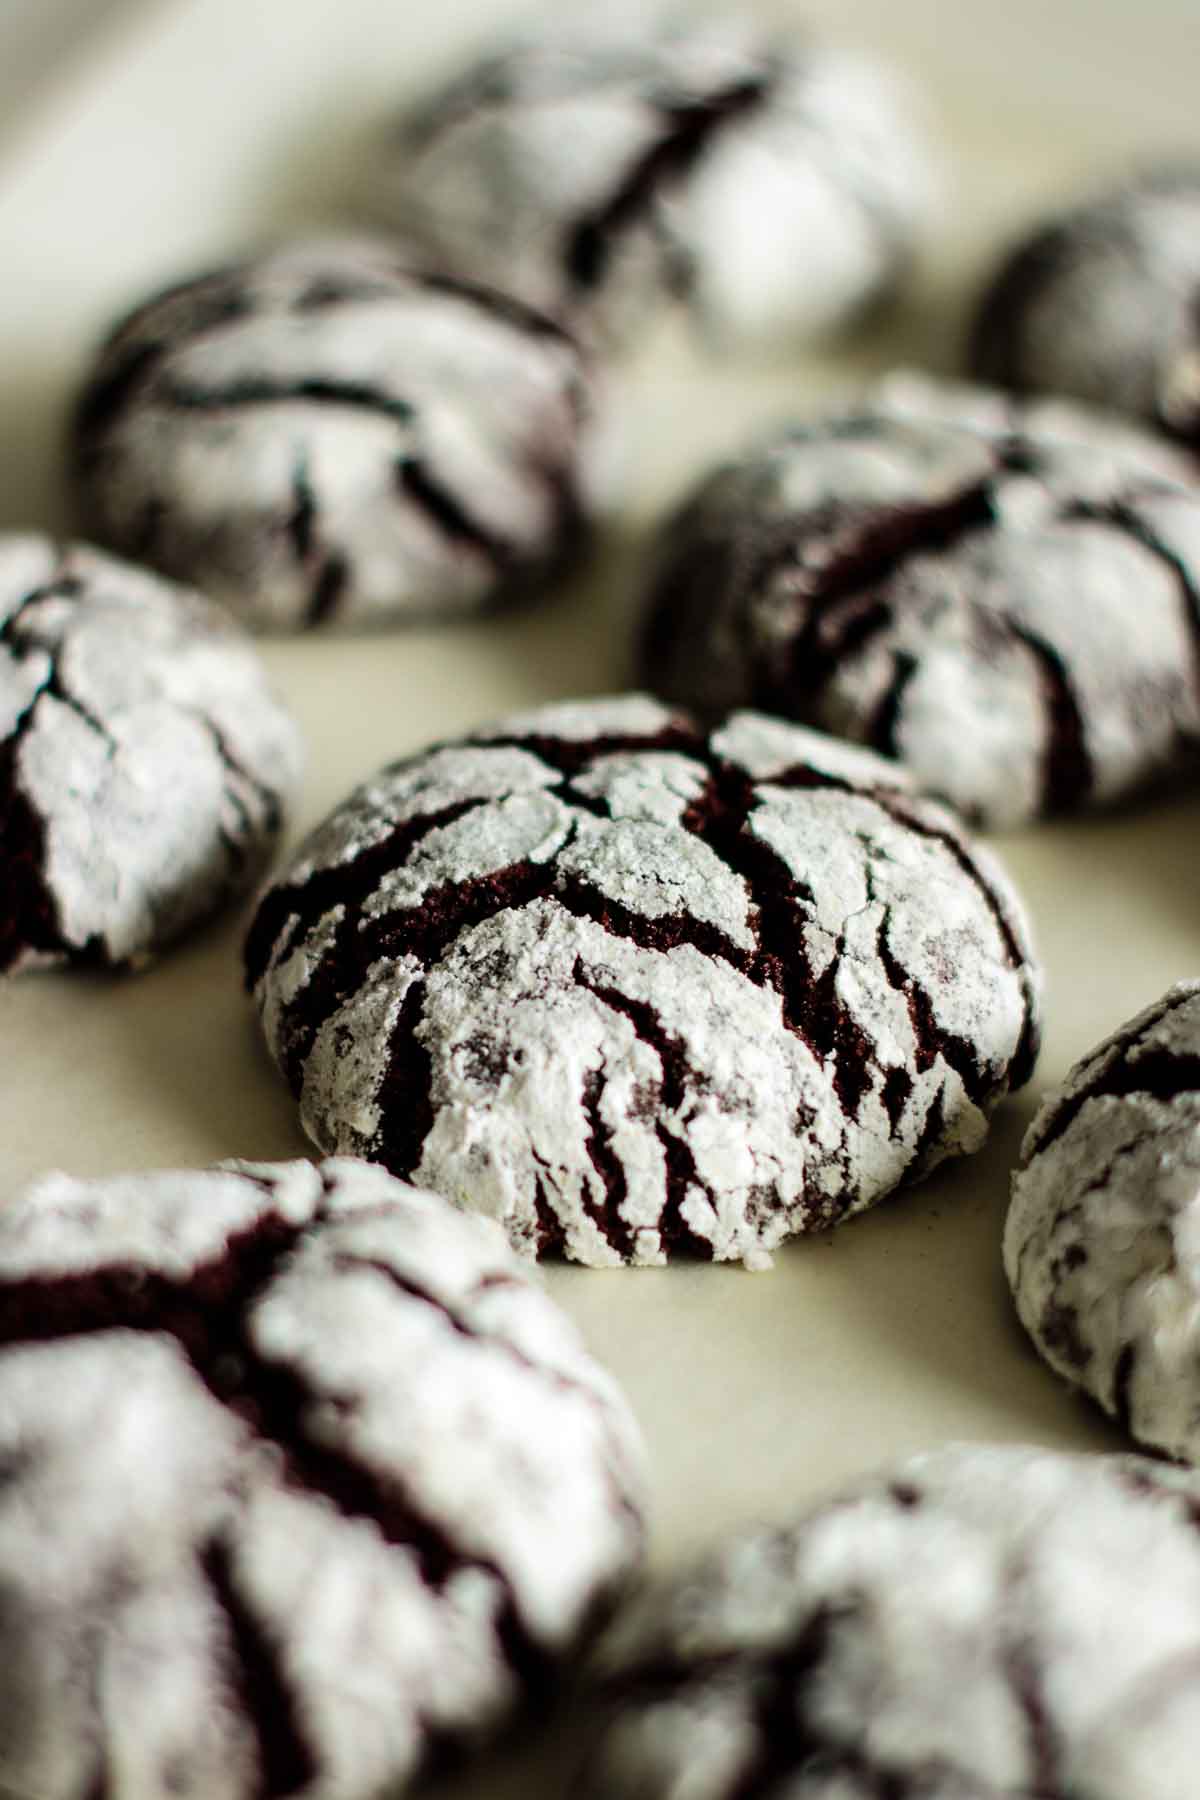 Chocolate crinkle cookies in a baking pan.